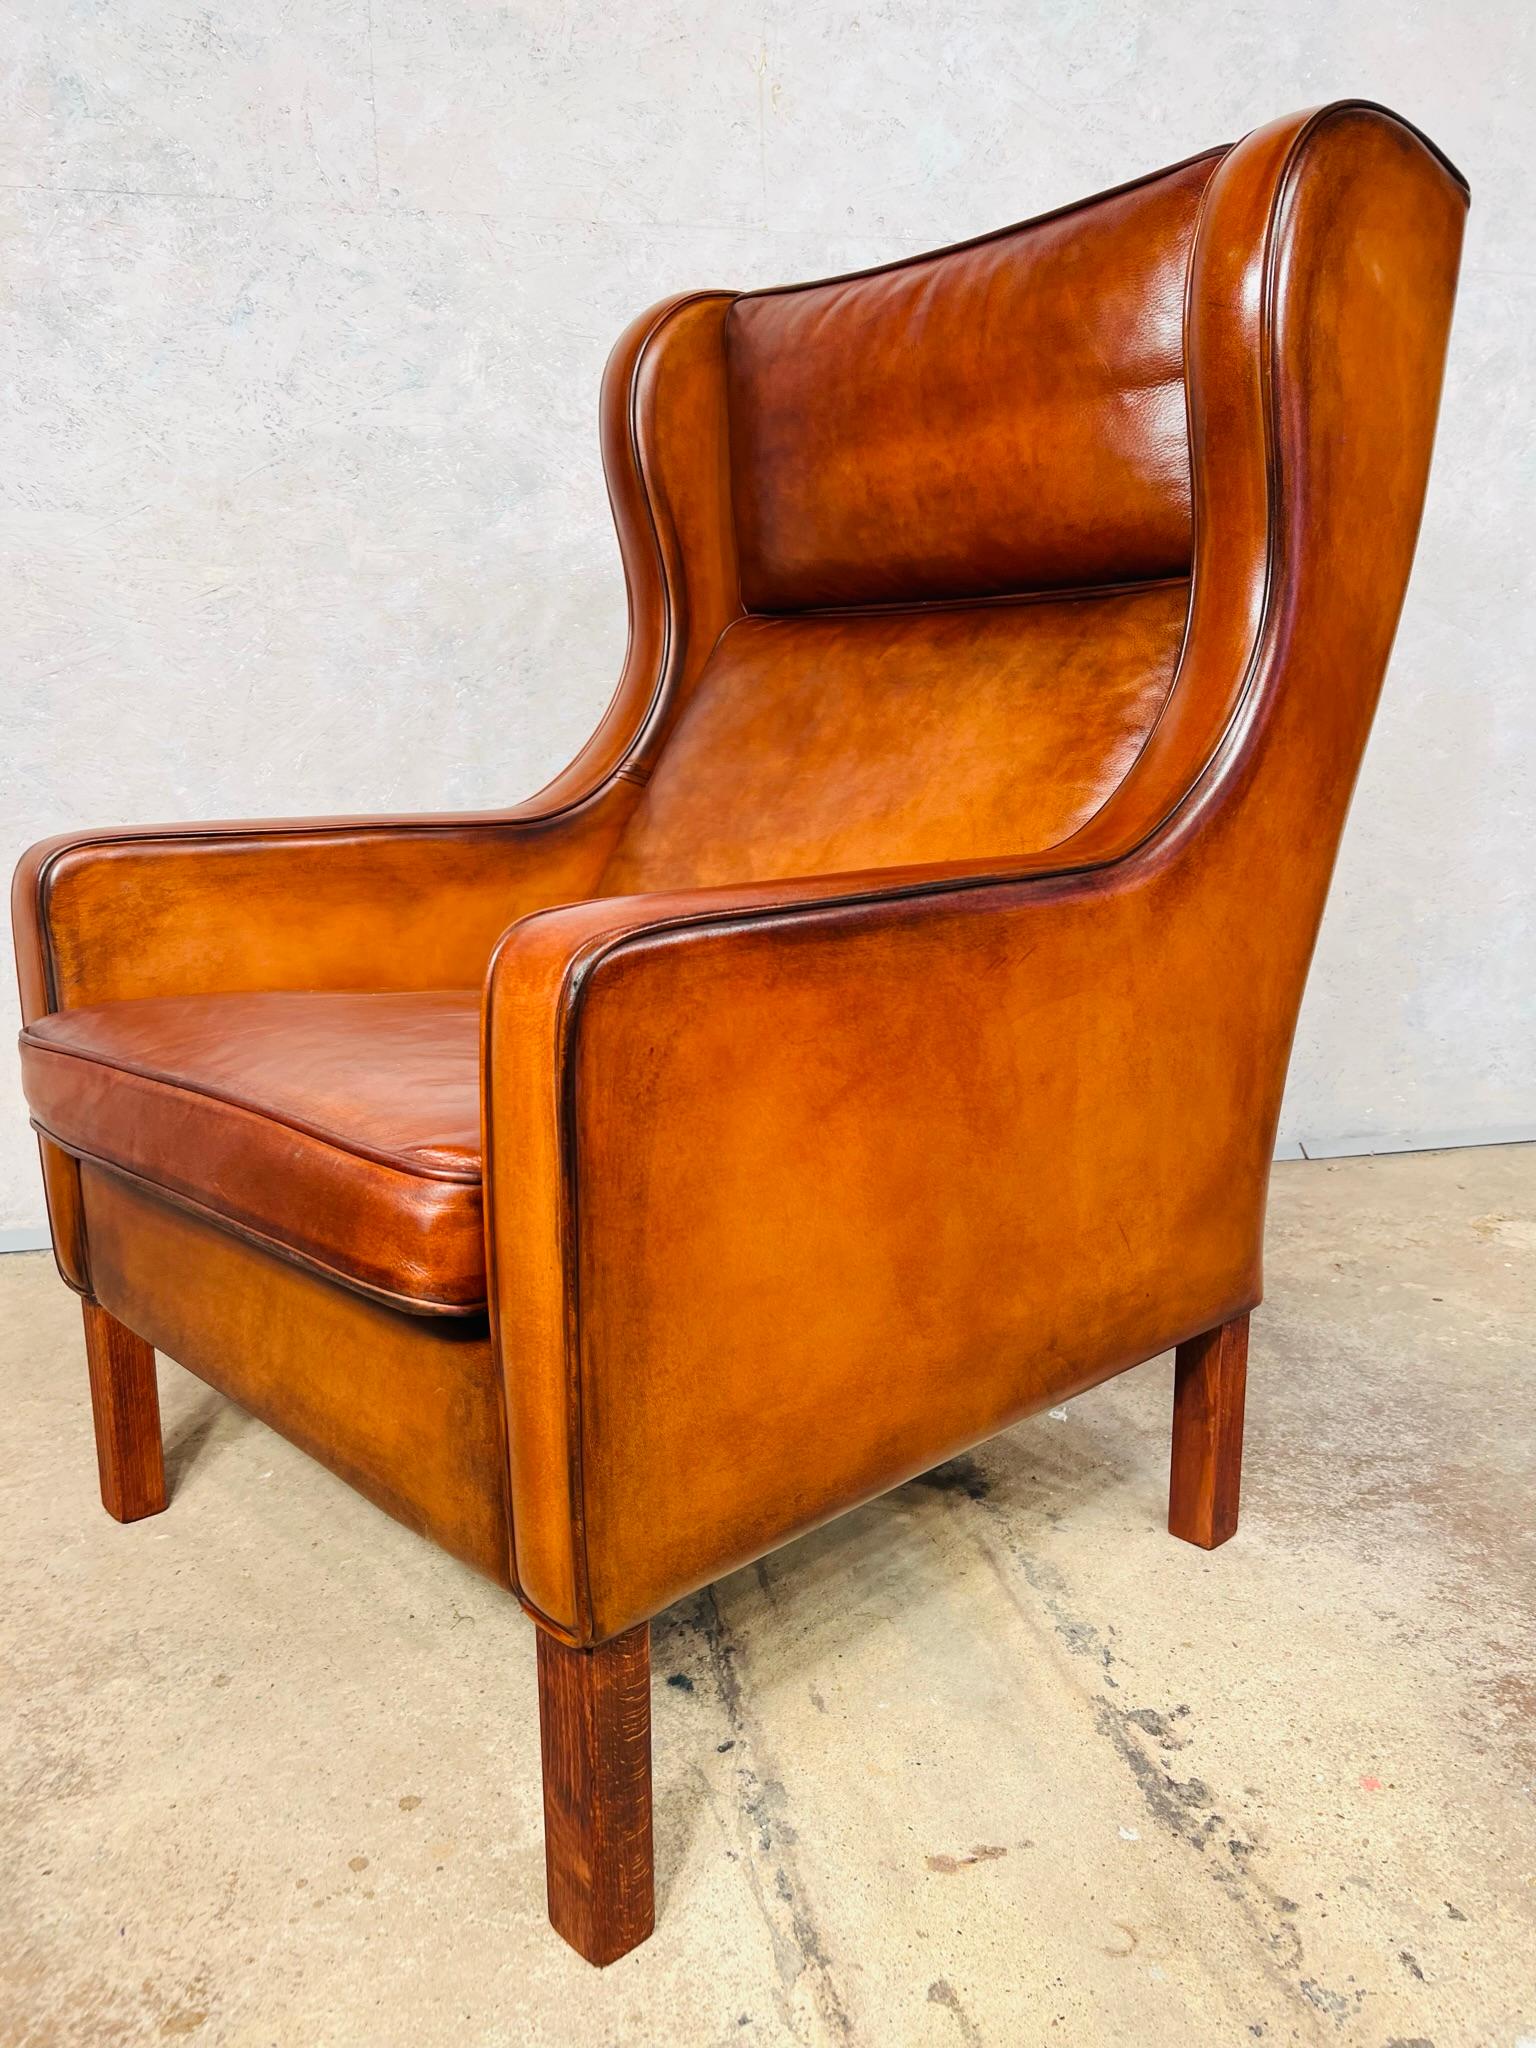 Magnifique fauteuil vintage danois des années 70, de grande qualité, avec une forme et des proportions magnifiques. Très belle assise. En très bon état avec une belle couleur tan patinée, le cuir est de grande qualité et a une belle finition et